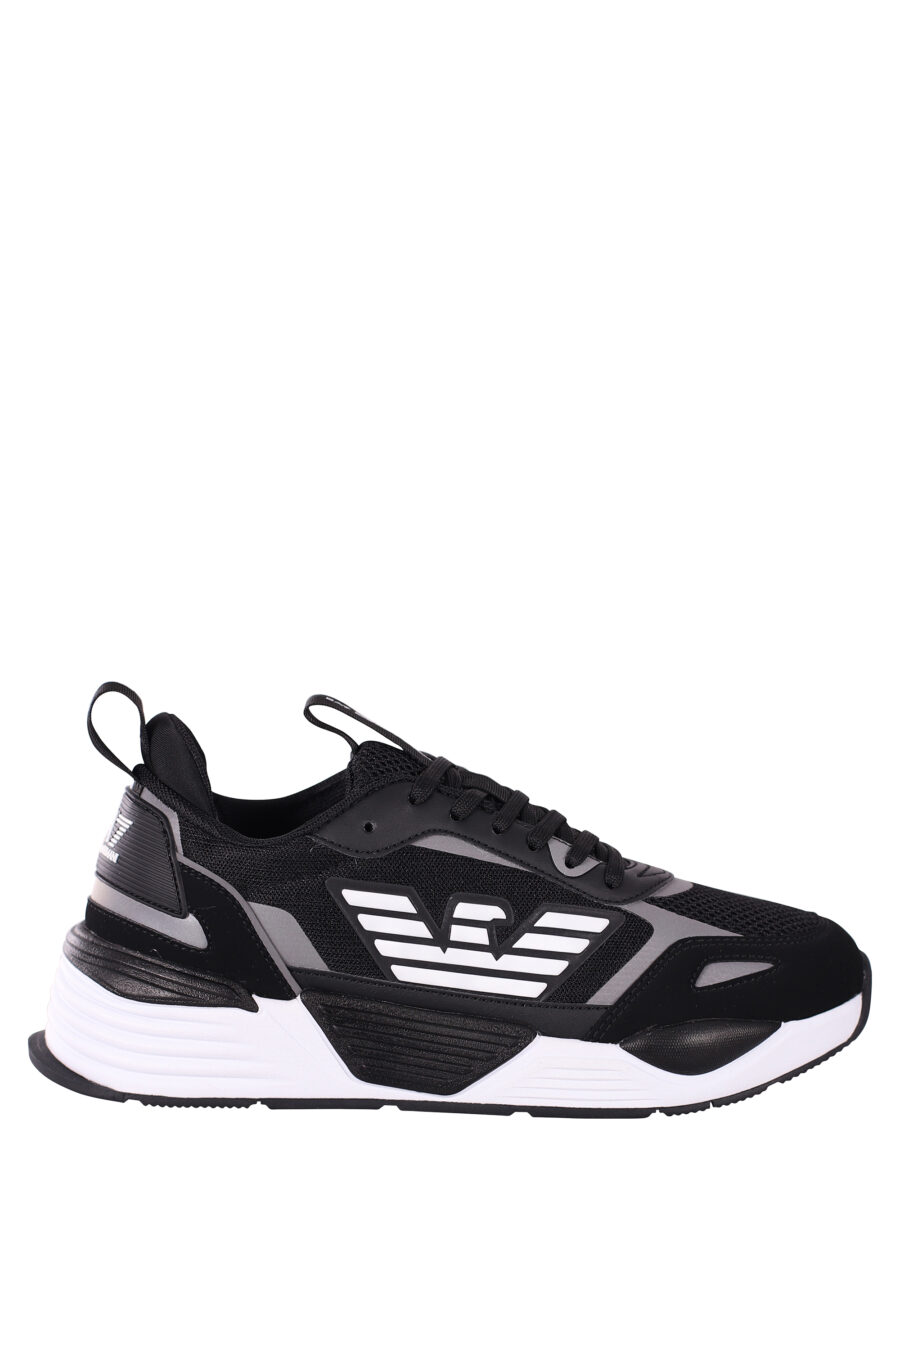 Chaussures "ace runner" noires et argentées avec logo de l'aigle - IMG 5798